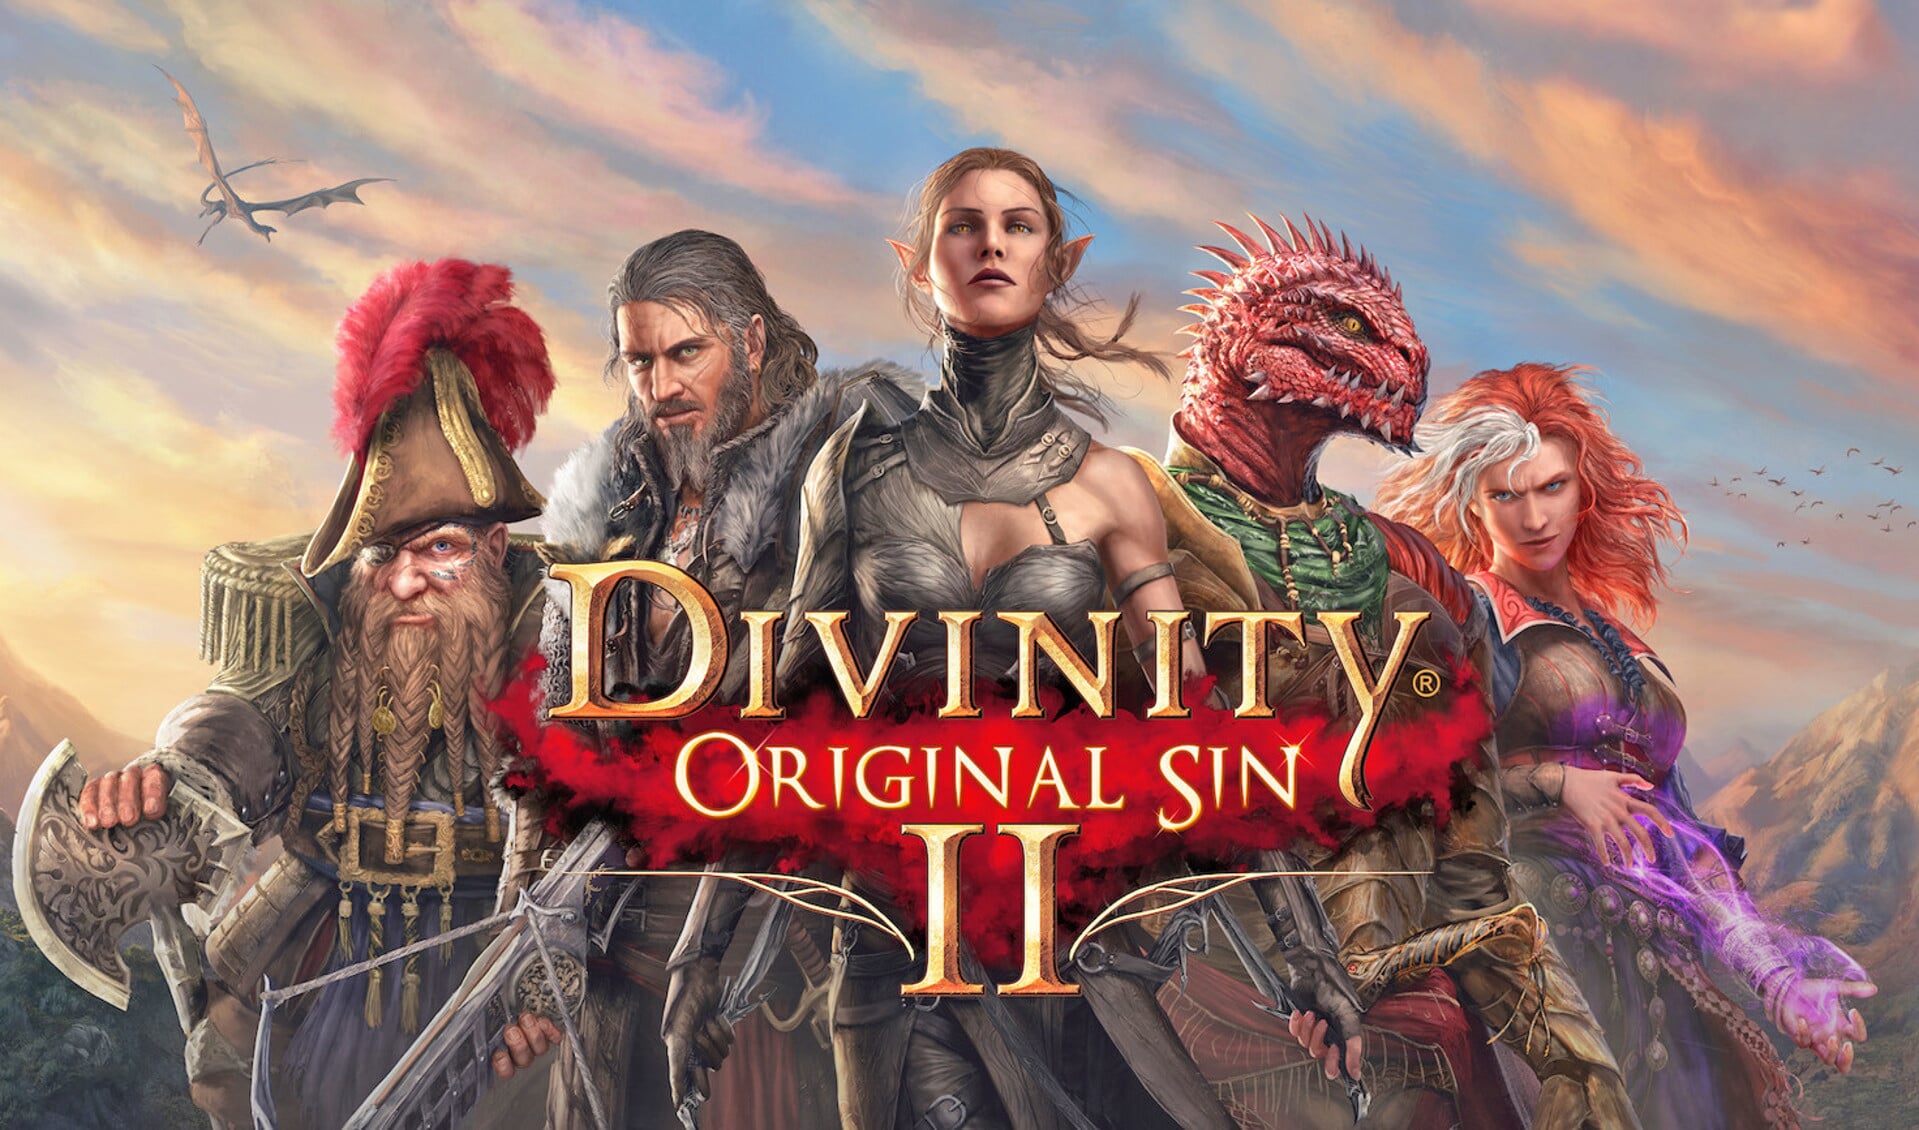 Game Divinity Original Sin II: Waarom zou ik moeite doen om goed te zijn?